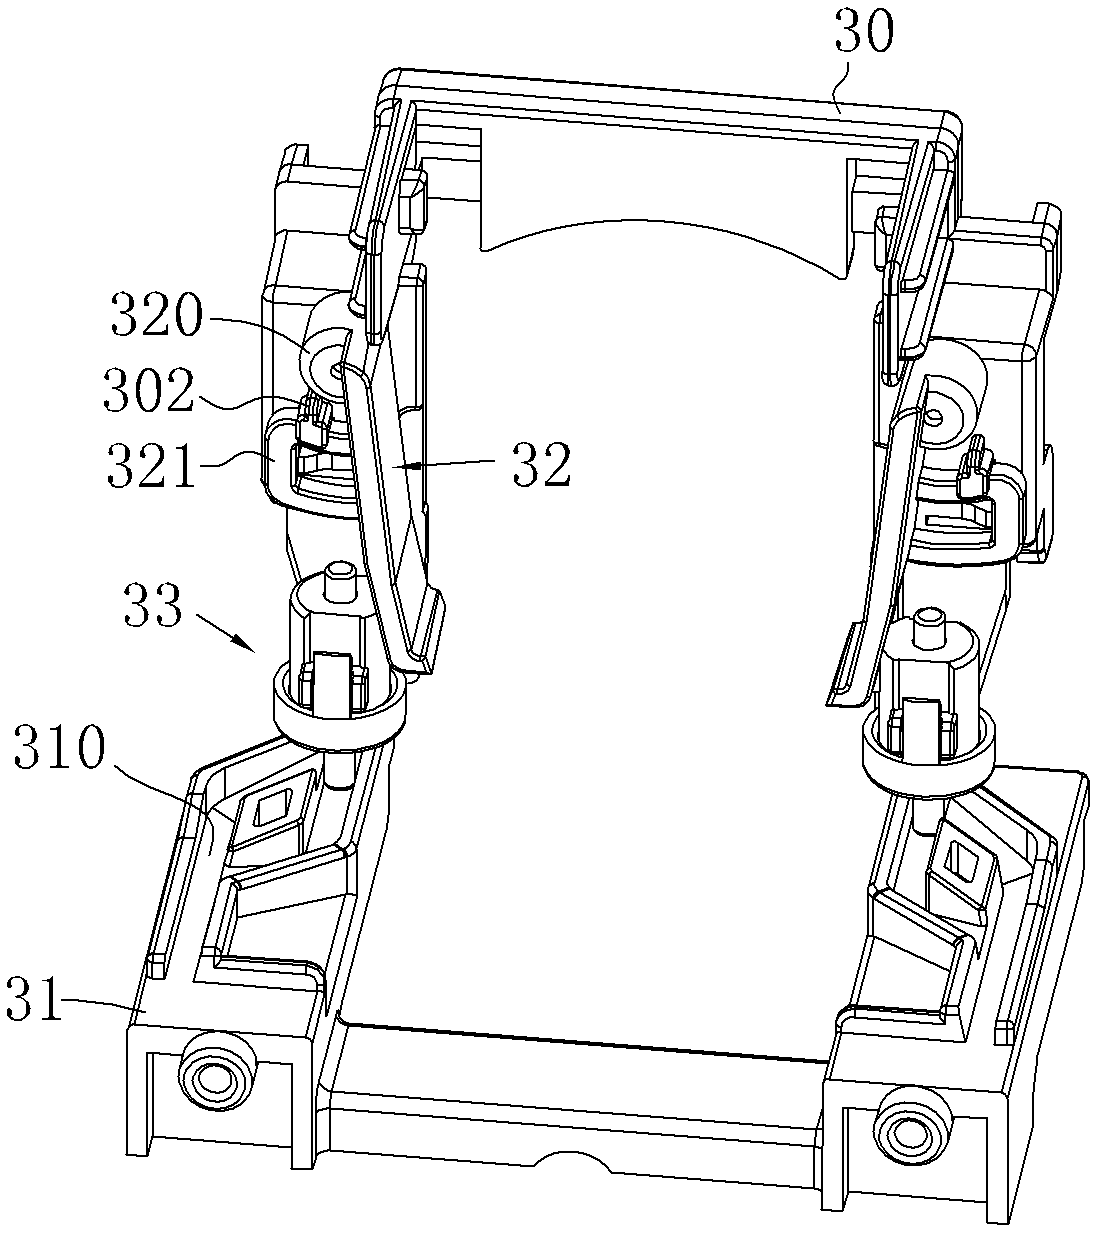 Separation blade mechanism of capsule coffee maker